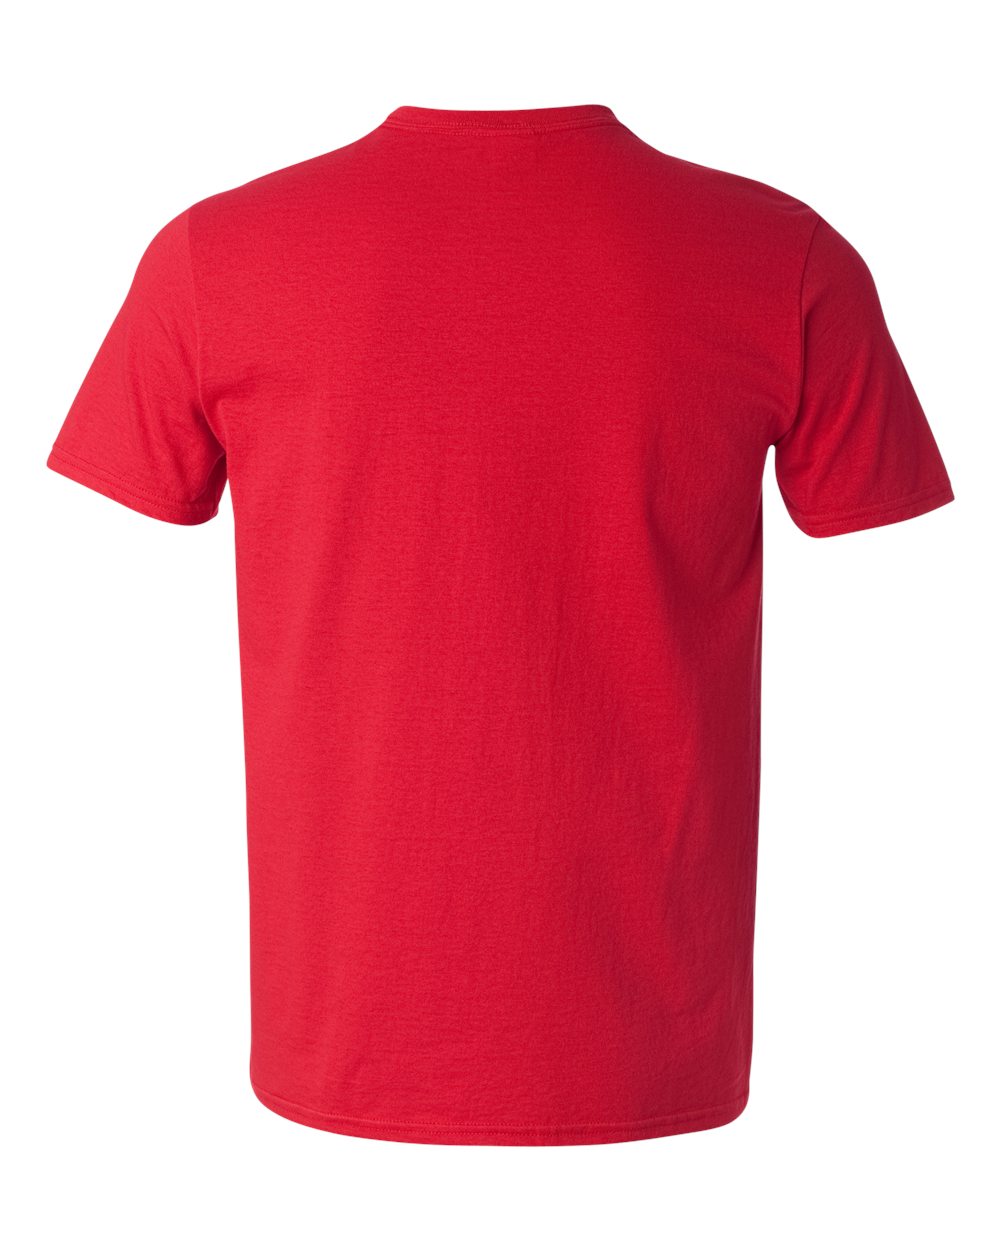 red v neck t shirt